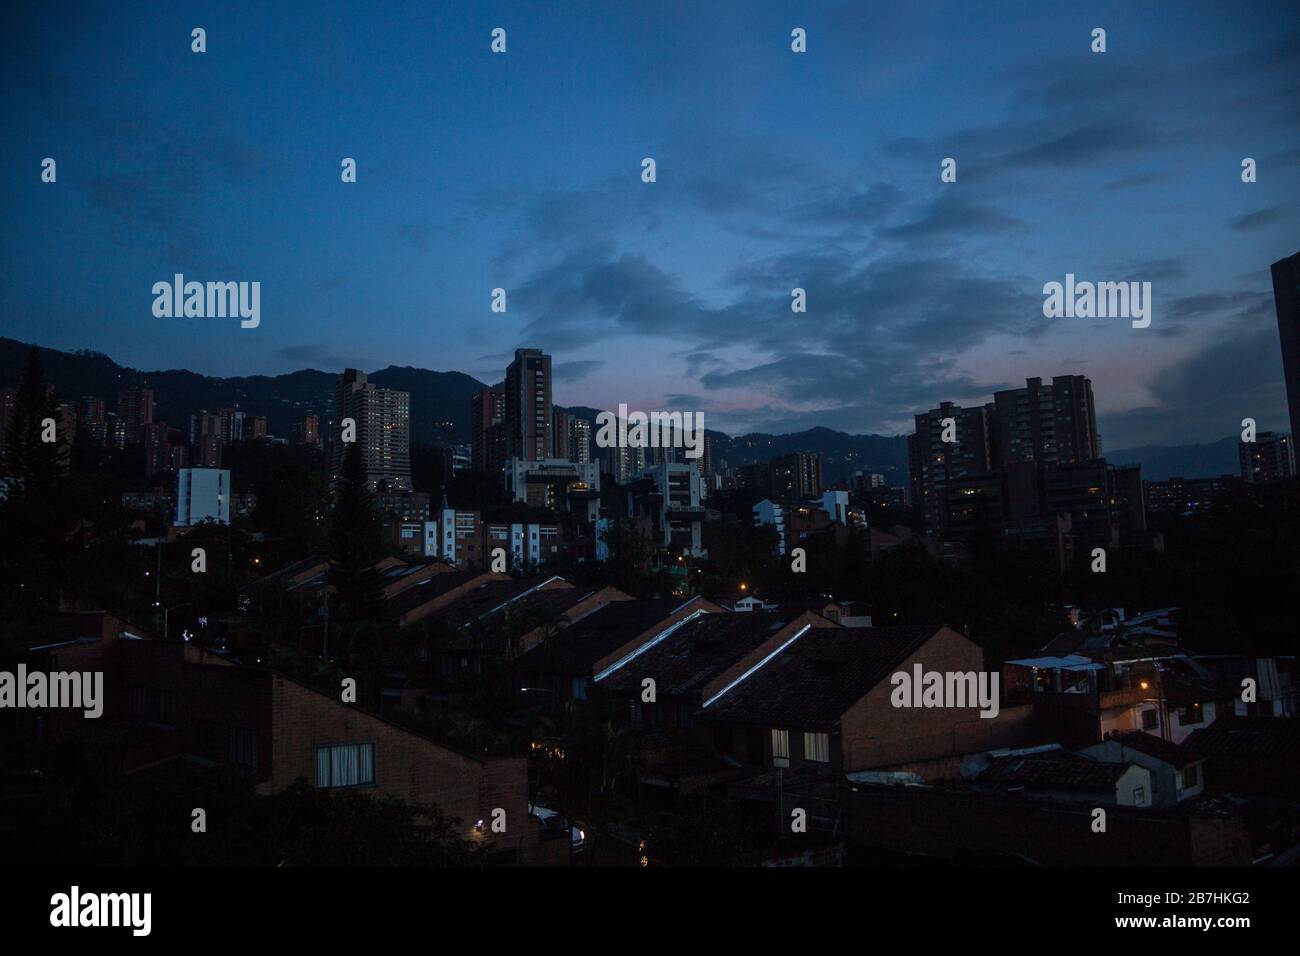 La notte cade sugli appartamenti grattacieli del ricco barrio di El Poblado nella città di Medellin, Colombia Foto Stock